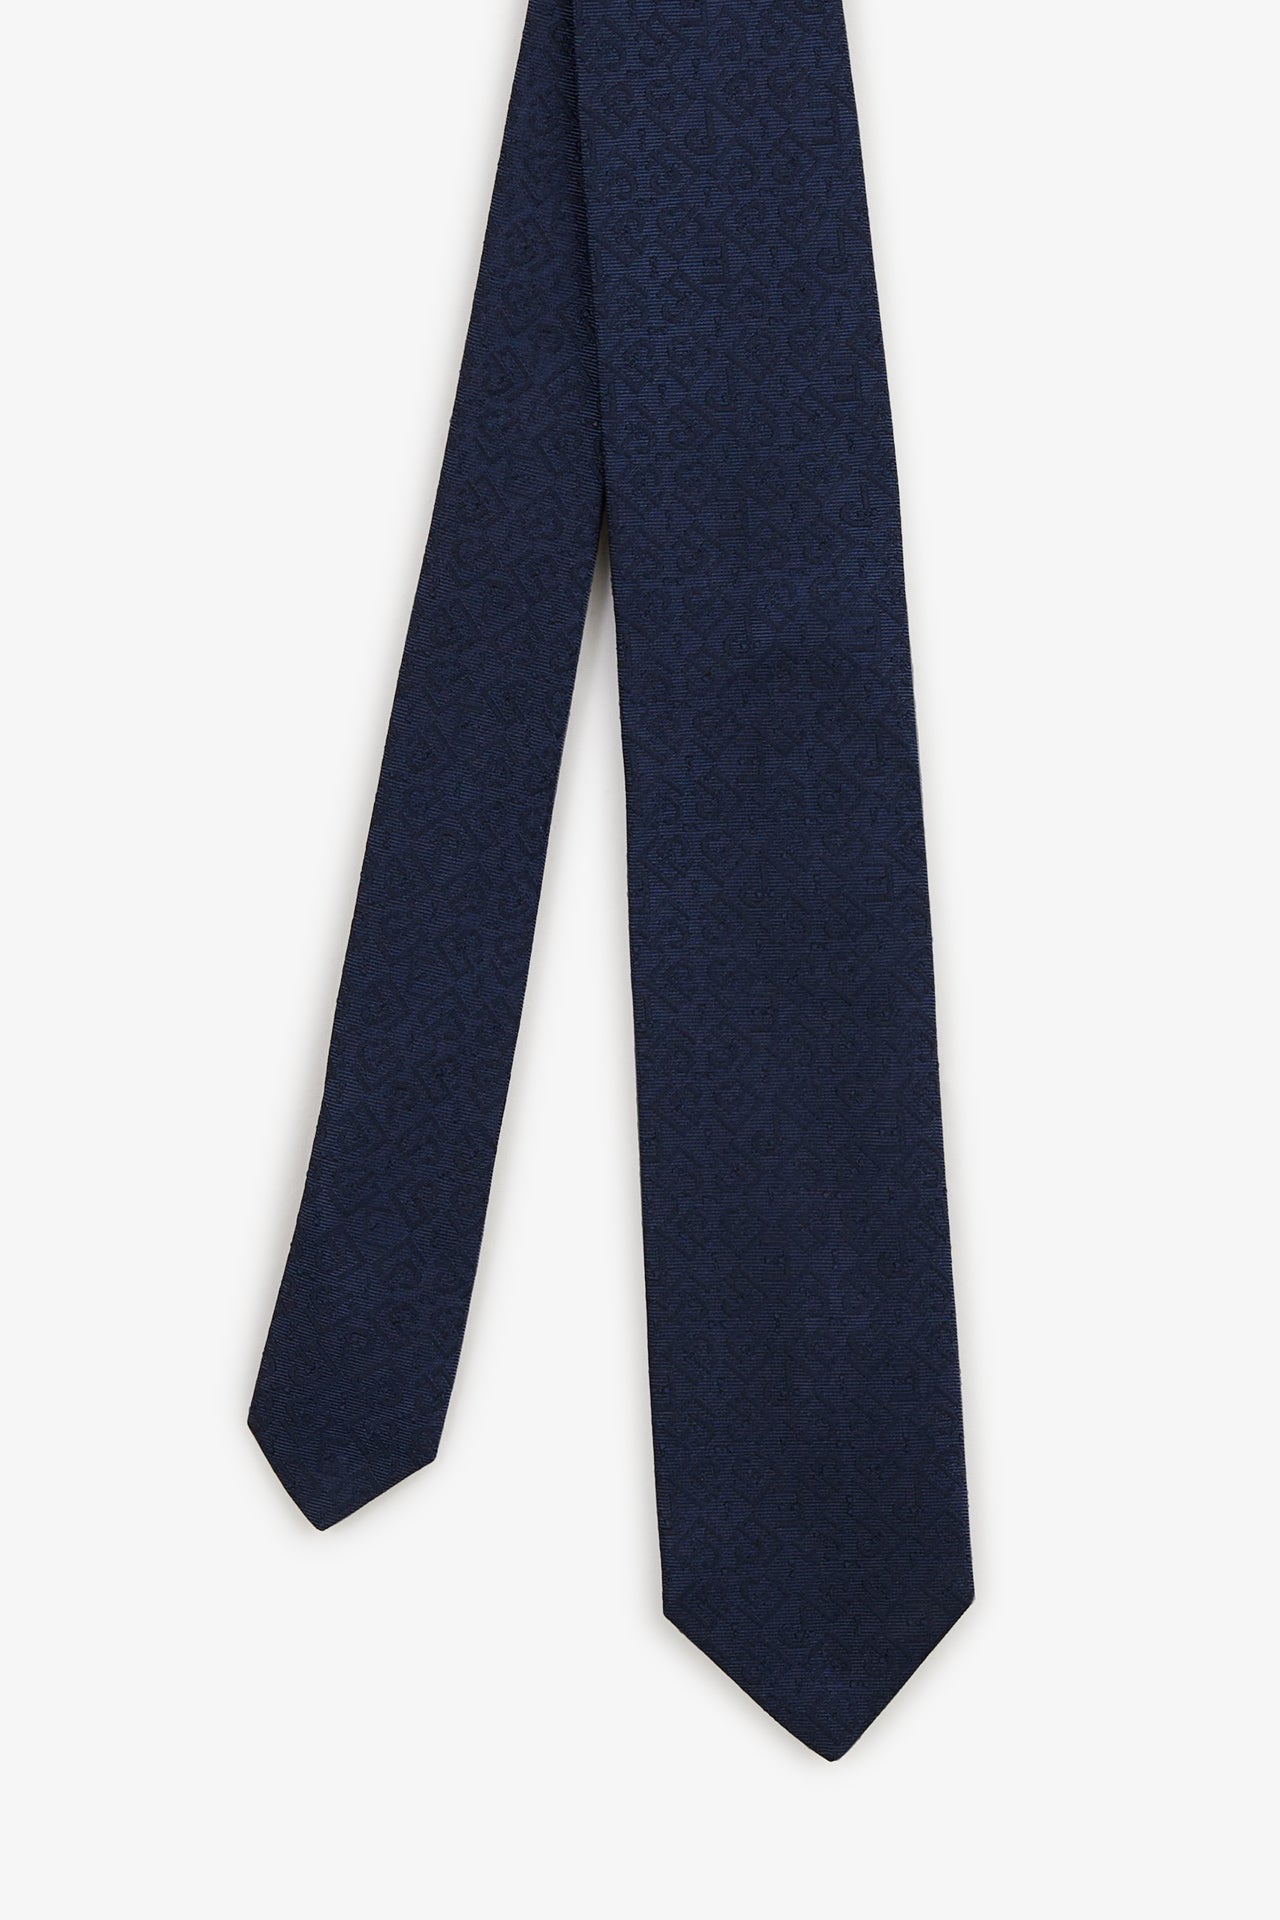 Cravate bleu foncé à micros-motifs exclusifs - Image 1